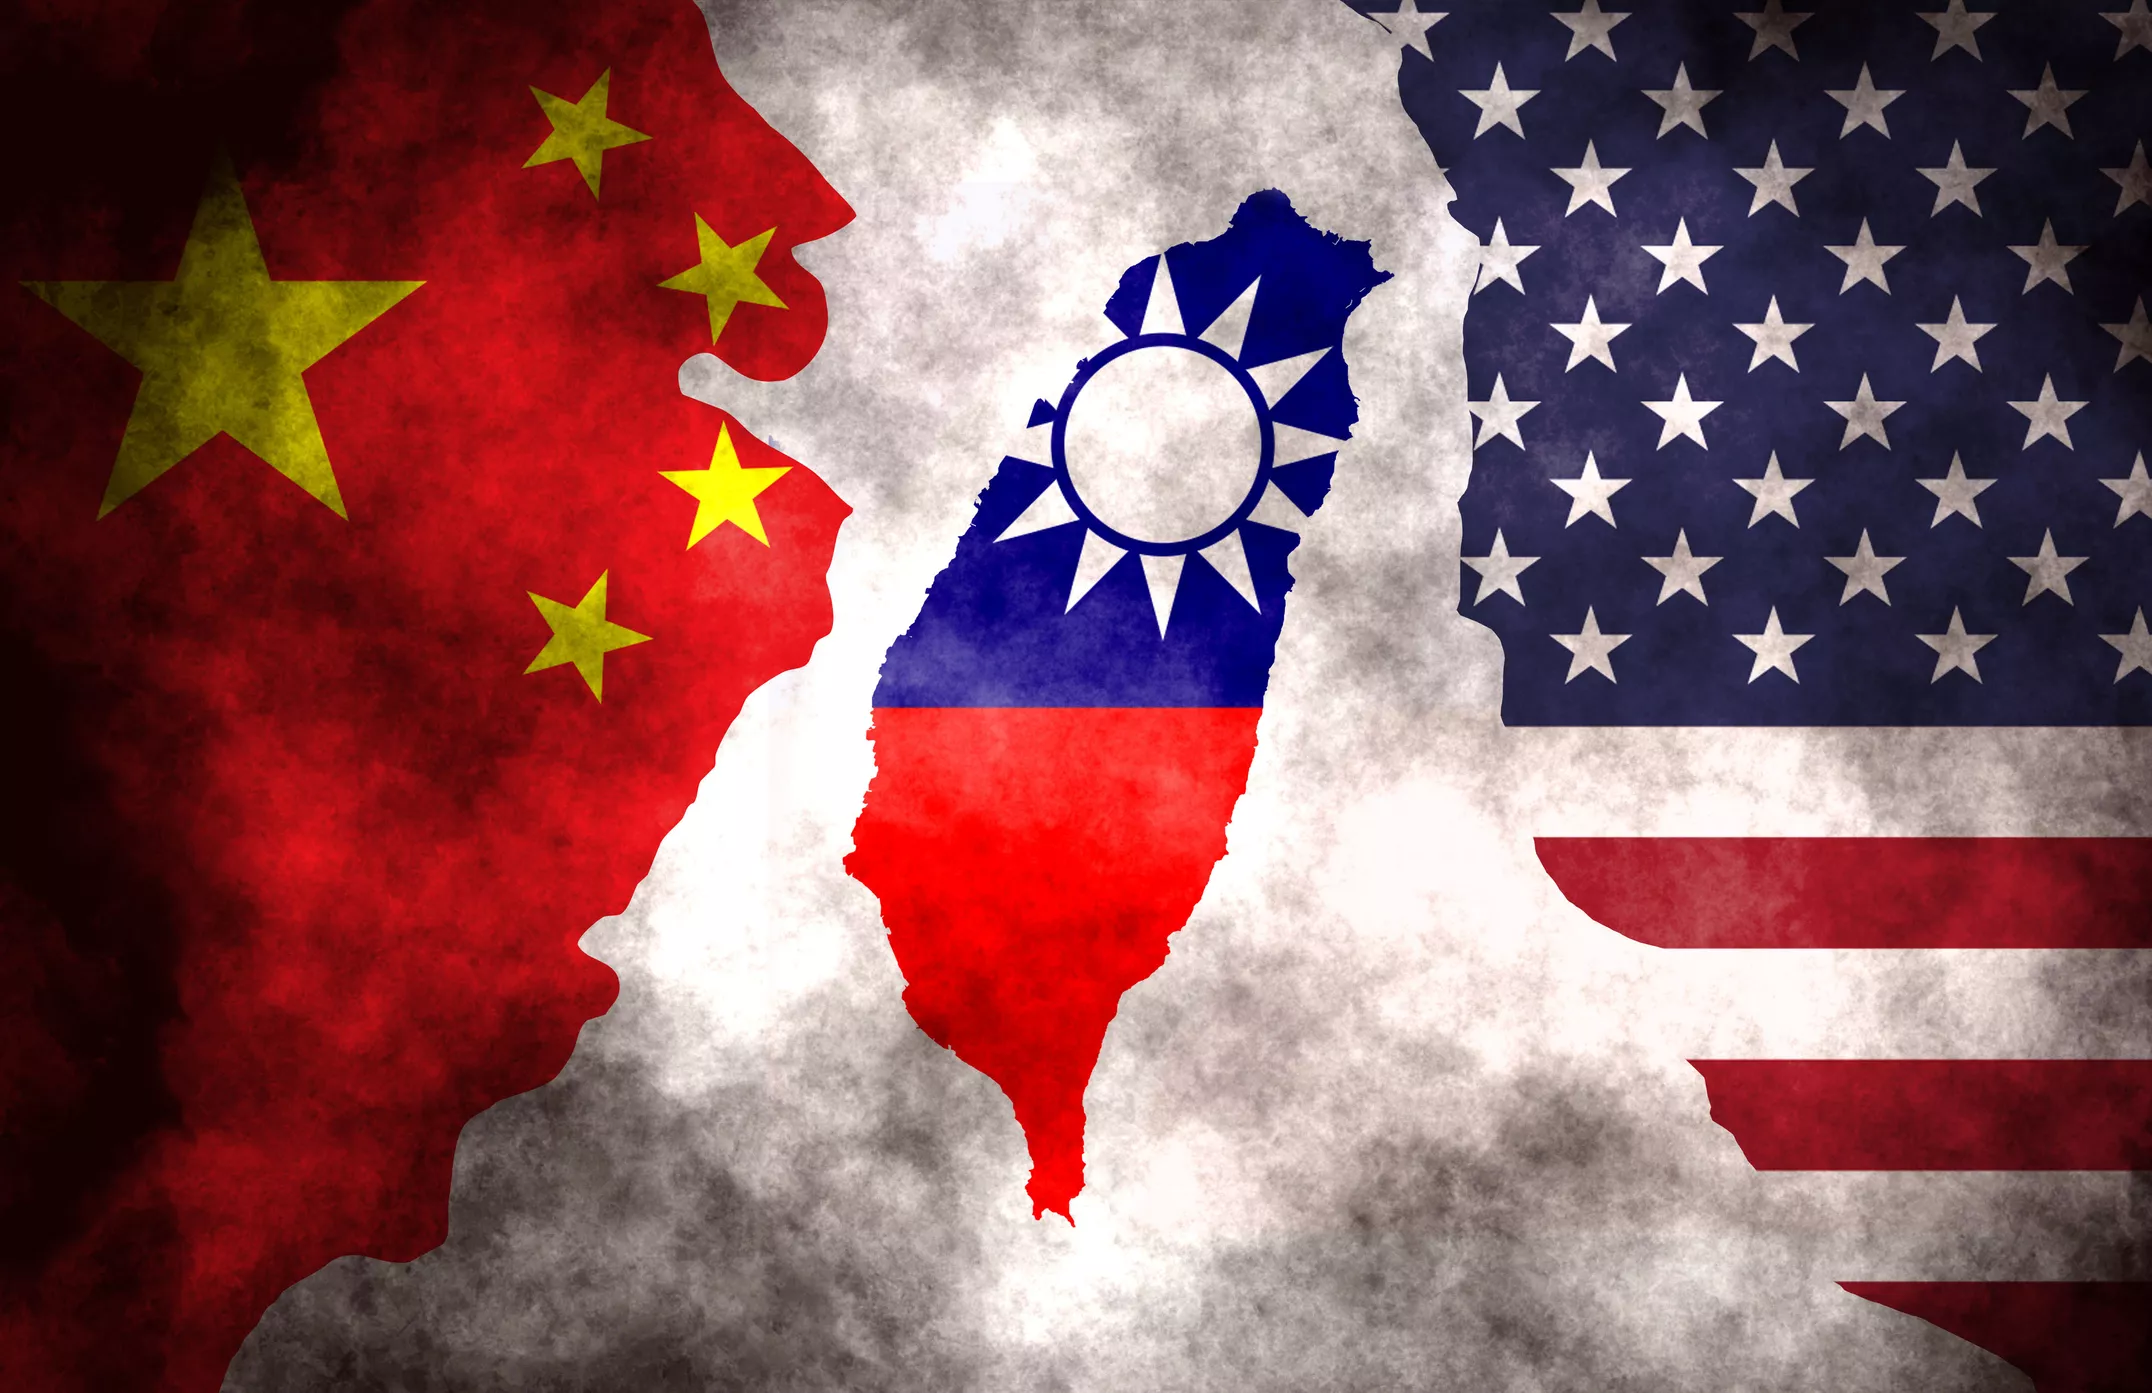 Taiwan ha estat objecte de disputa entre els Estats Units i la Xina